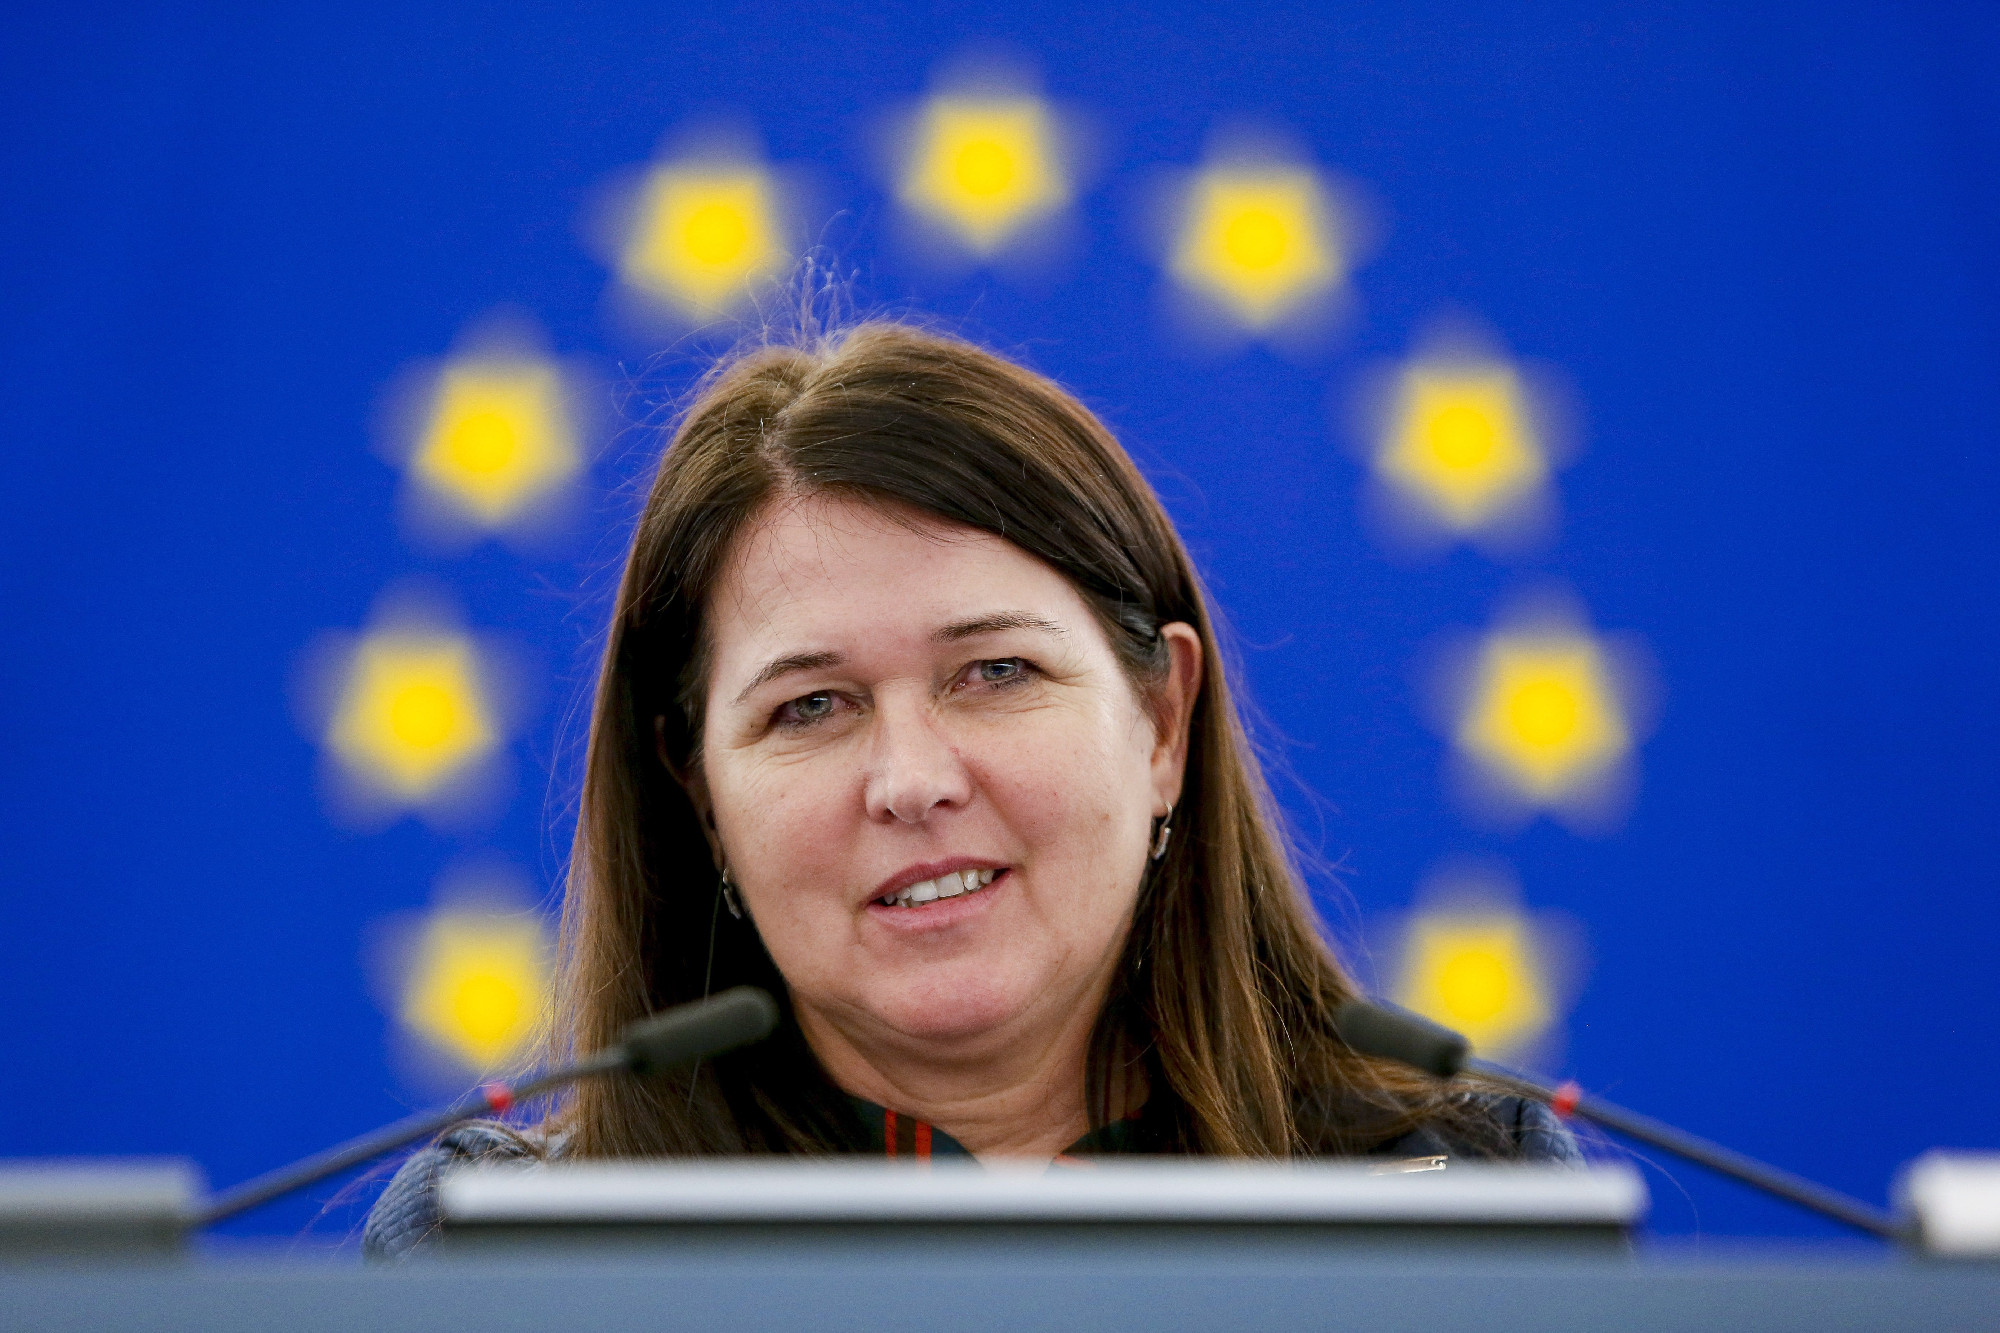 Elutasította az EP bizottsága Pelczné Gáll Ildikó jelölését az Európai Számvevőszékbe